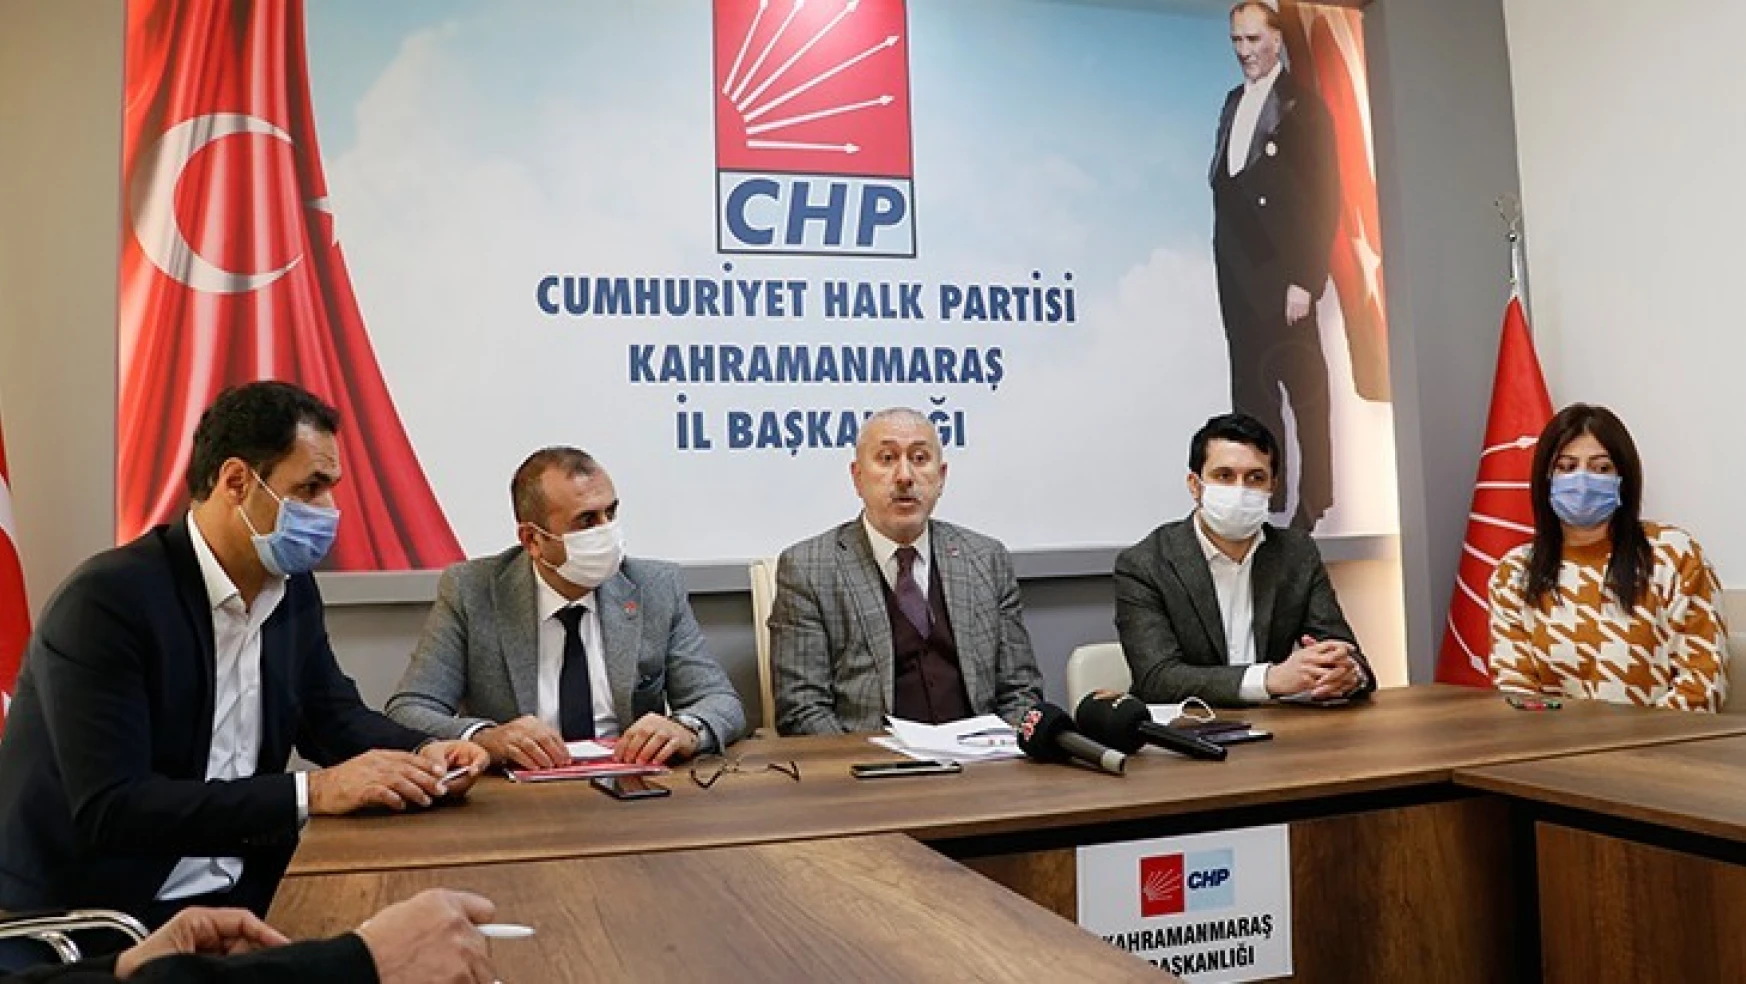 CHP İl Başkanı Şengül: Bizim önceliğimiz şehrimizin hassasiyetleri